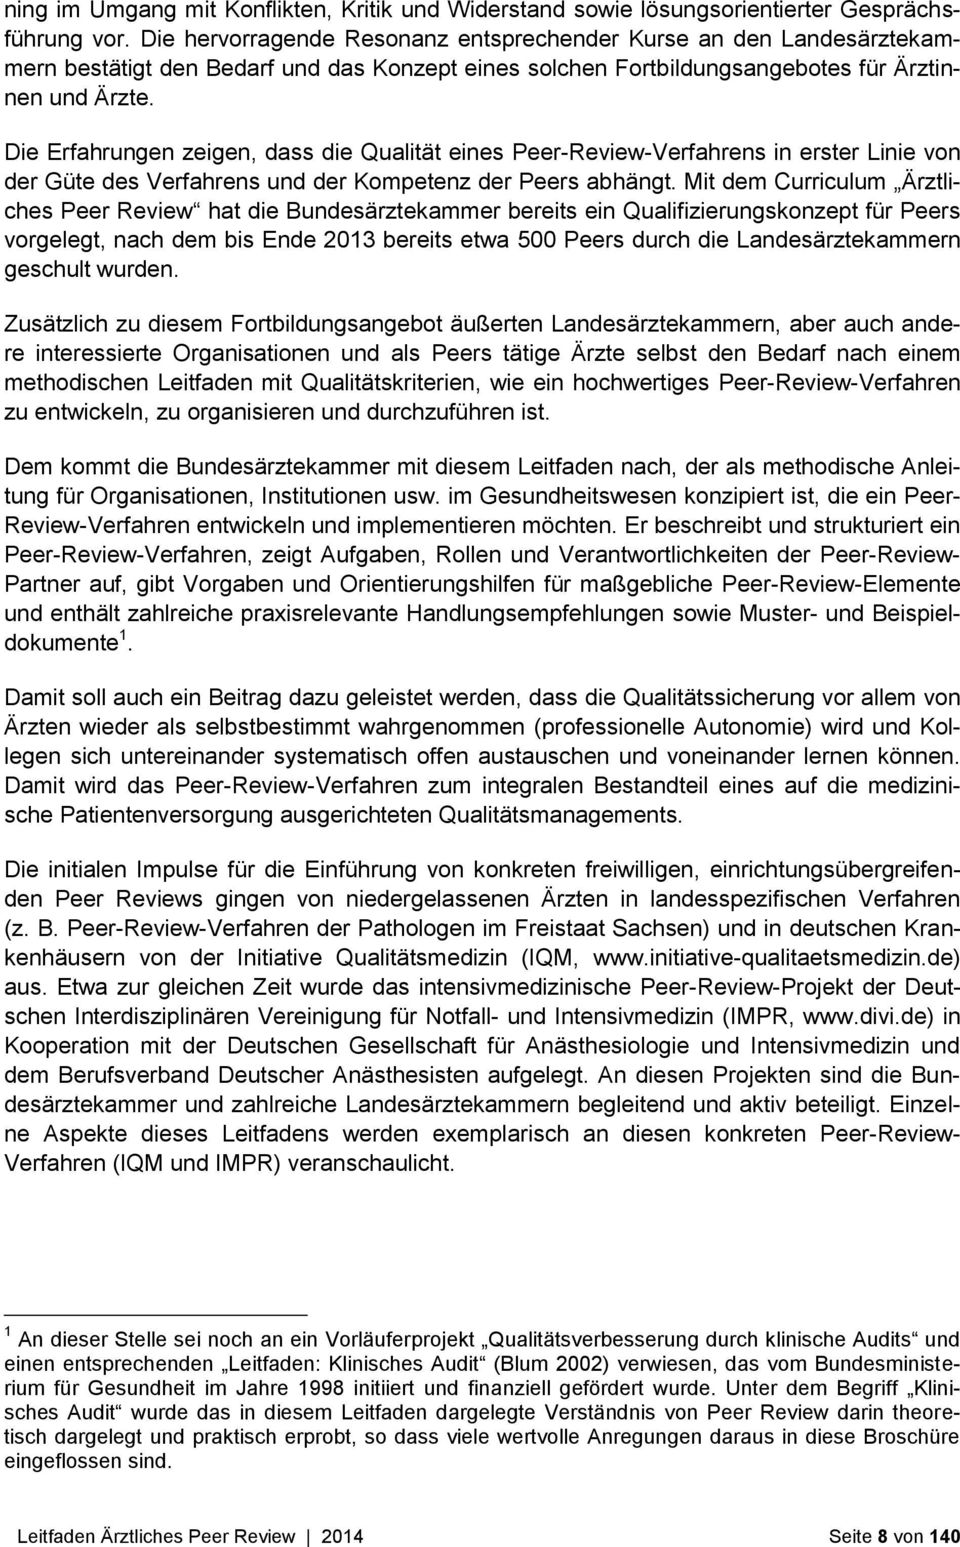 Bundesarztekammer Leitfaden Arztliches Peer Review Herausgeber Bundesarztekammer Pdf Free Download